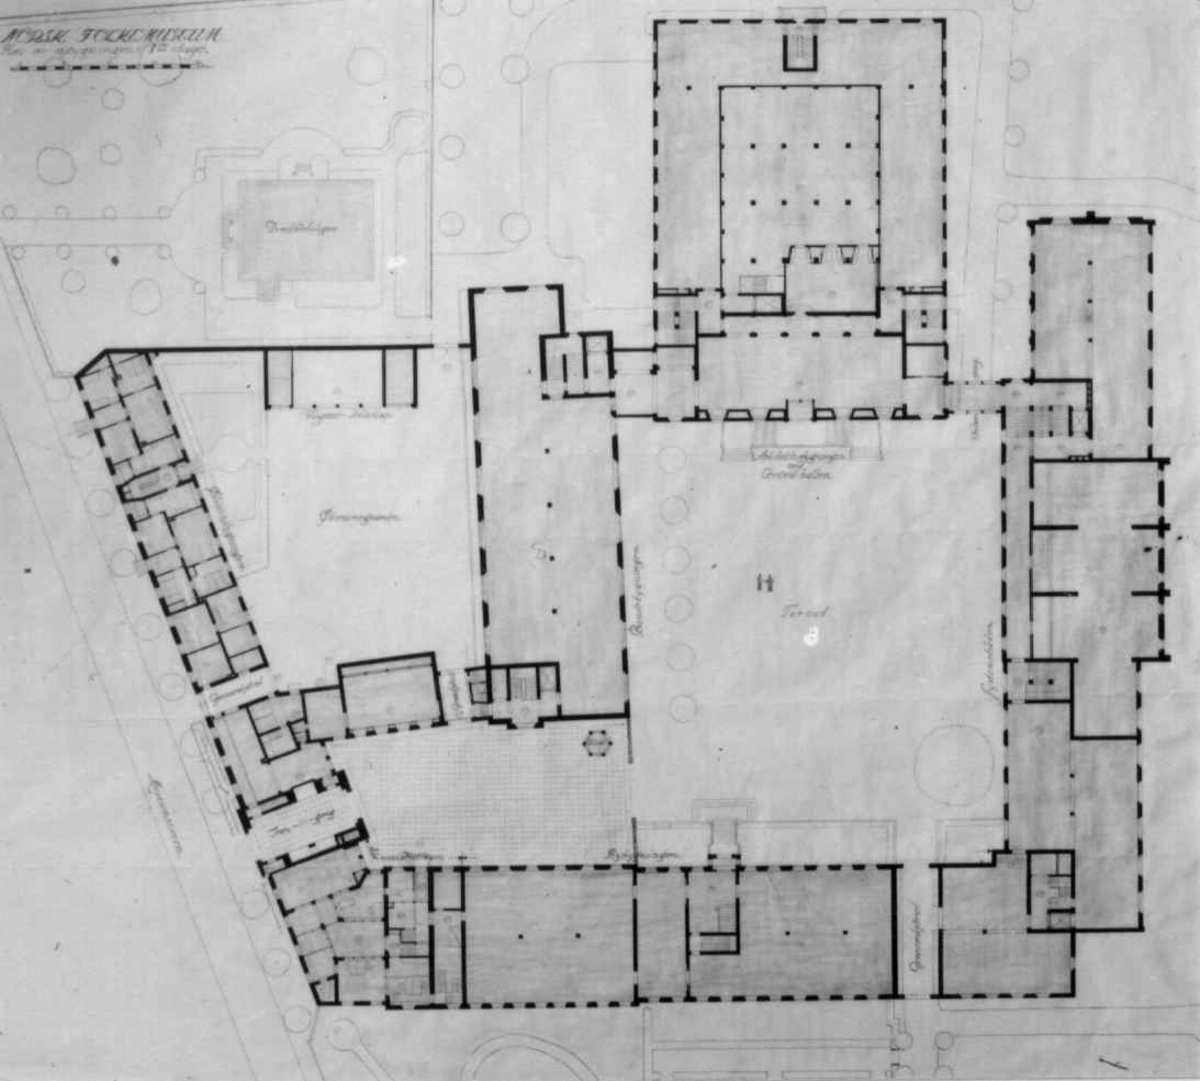 Plantegninger, fra 1925, fra arkitektene Bjercke og Eliassen. Utkast til nye museumsbygninger. Plan over første etasje.
